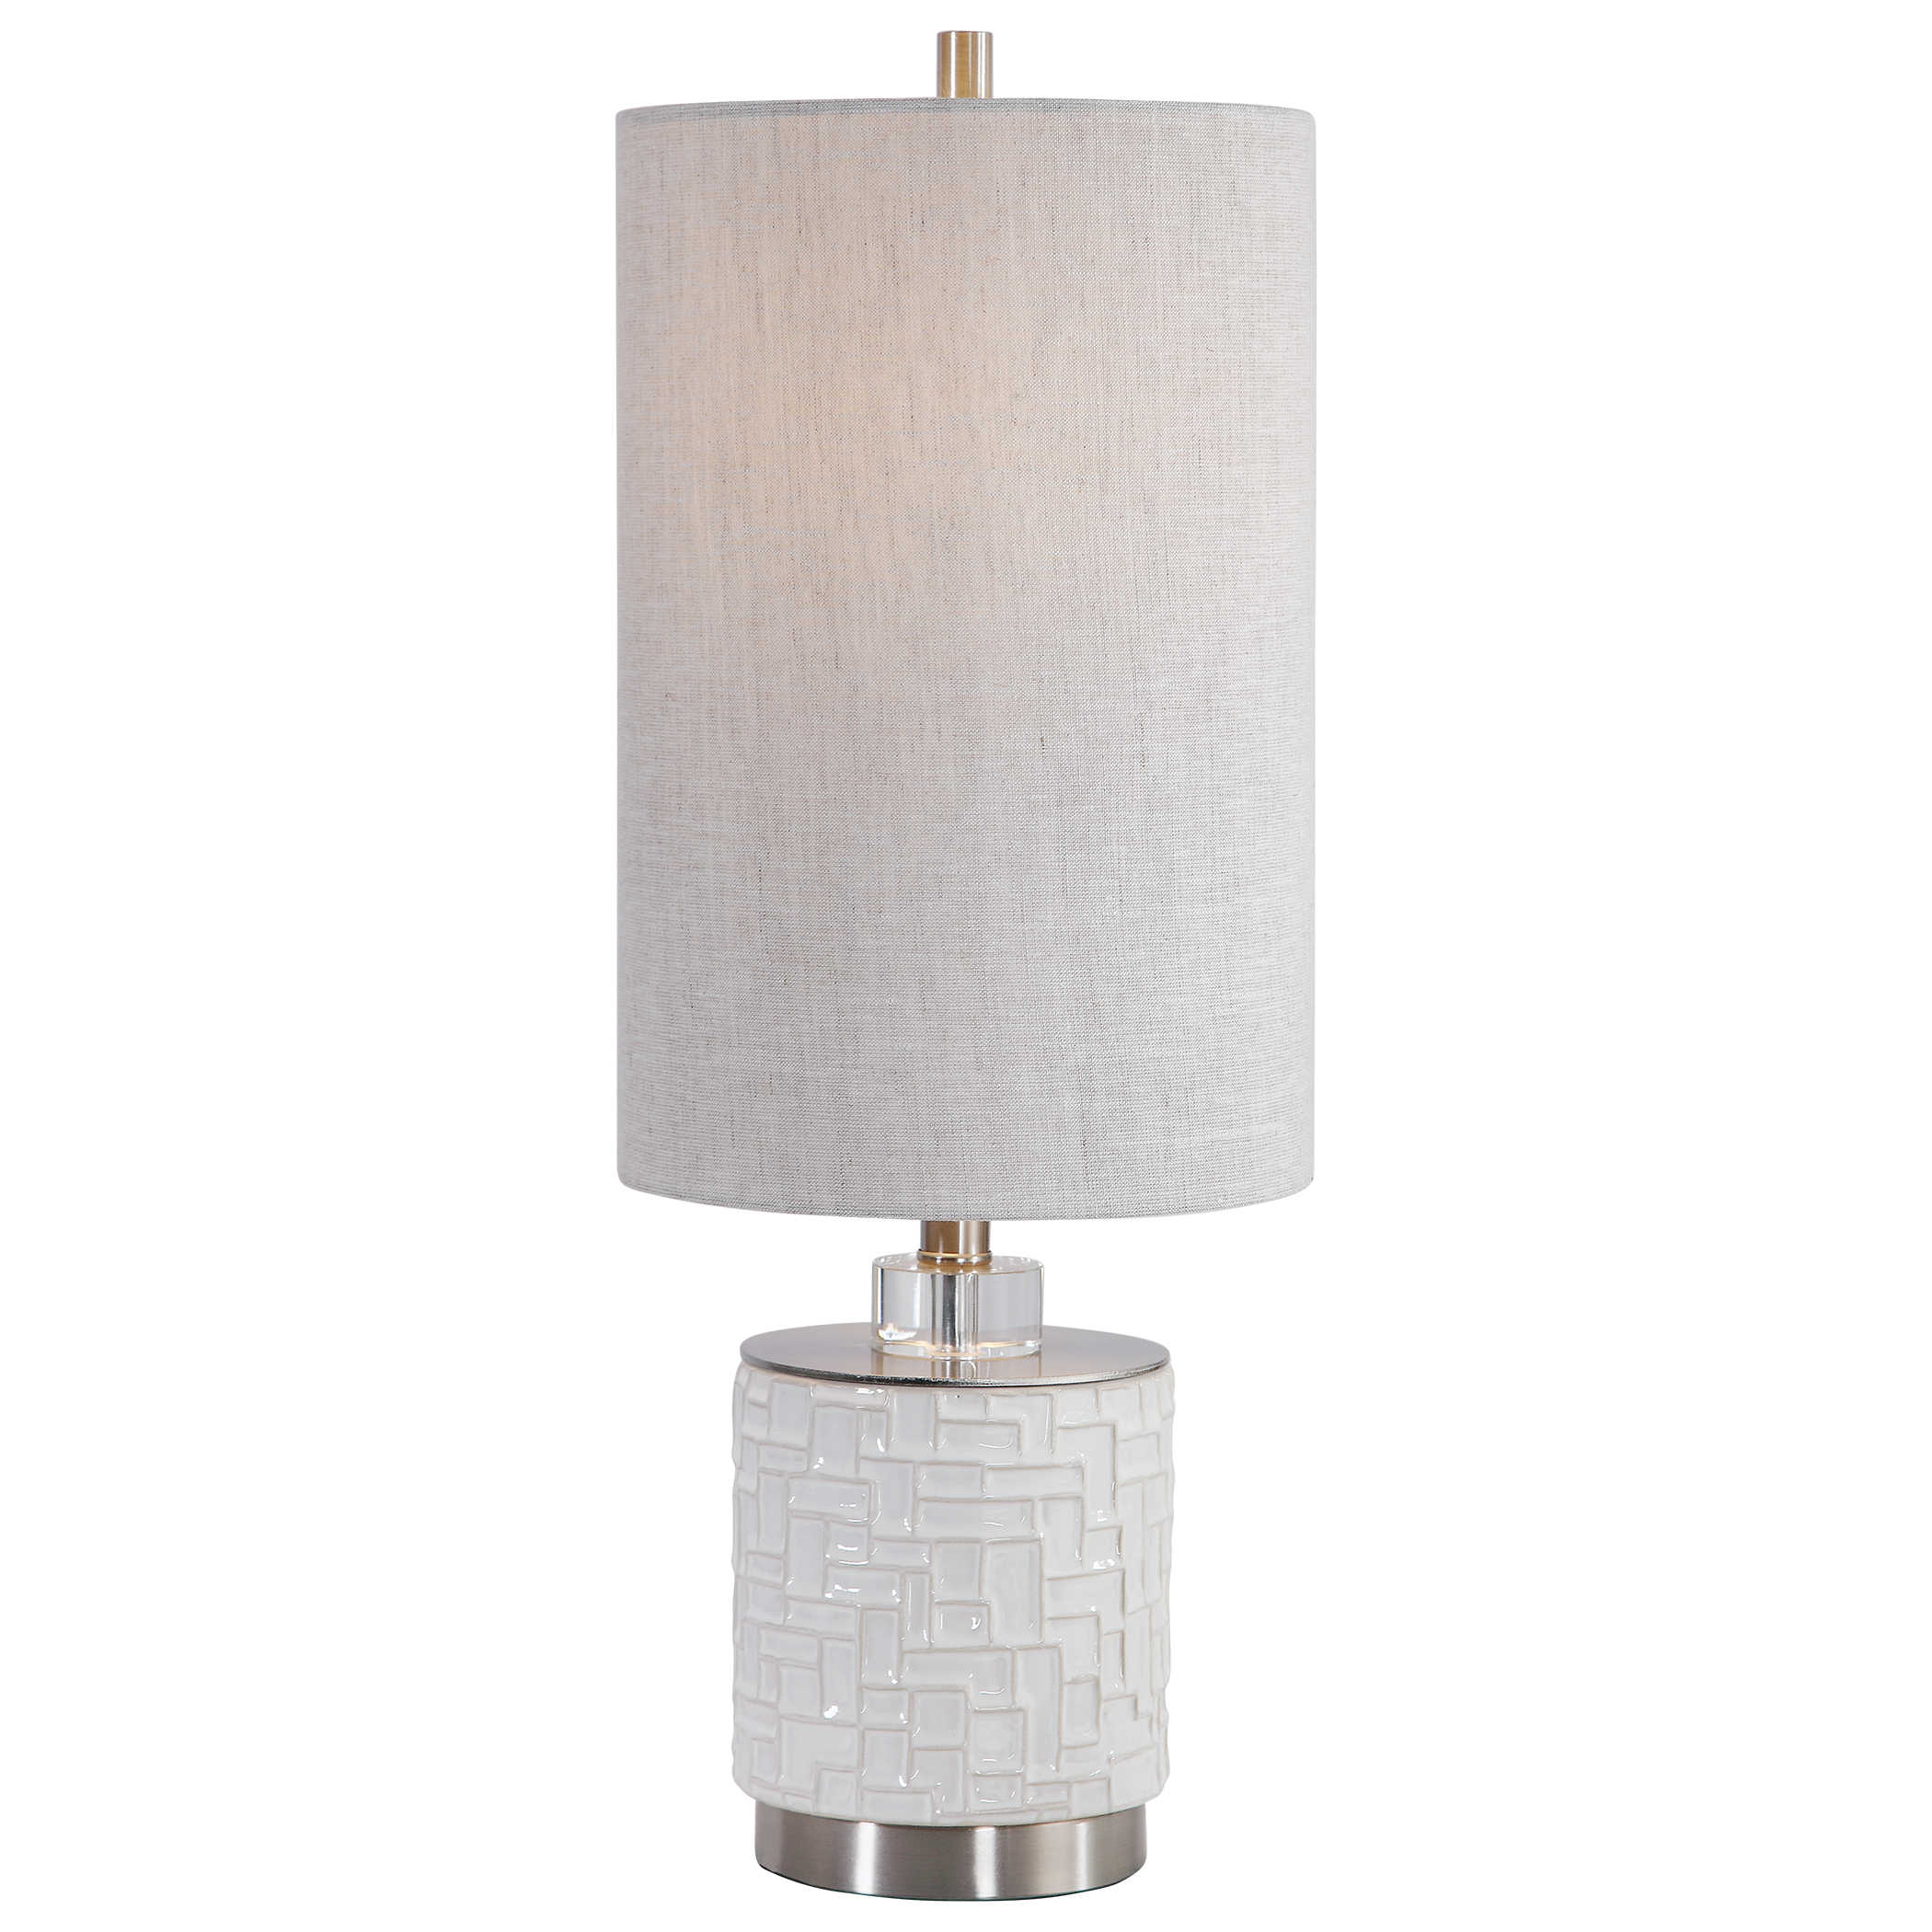 Лампа ELYN ACCENT LAMP 29731-1 Uttermost США